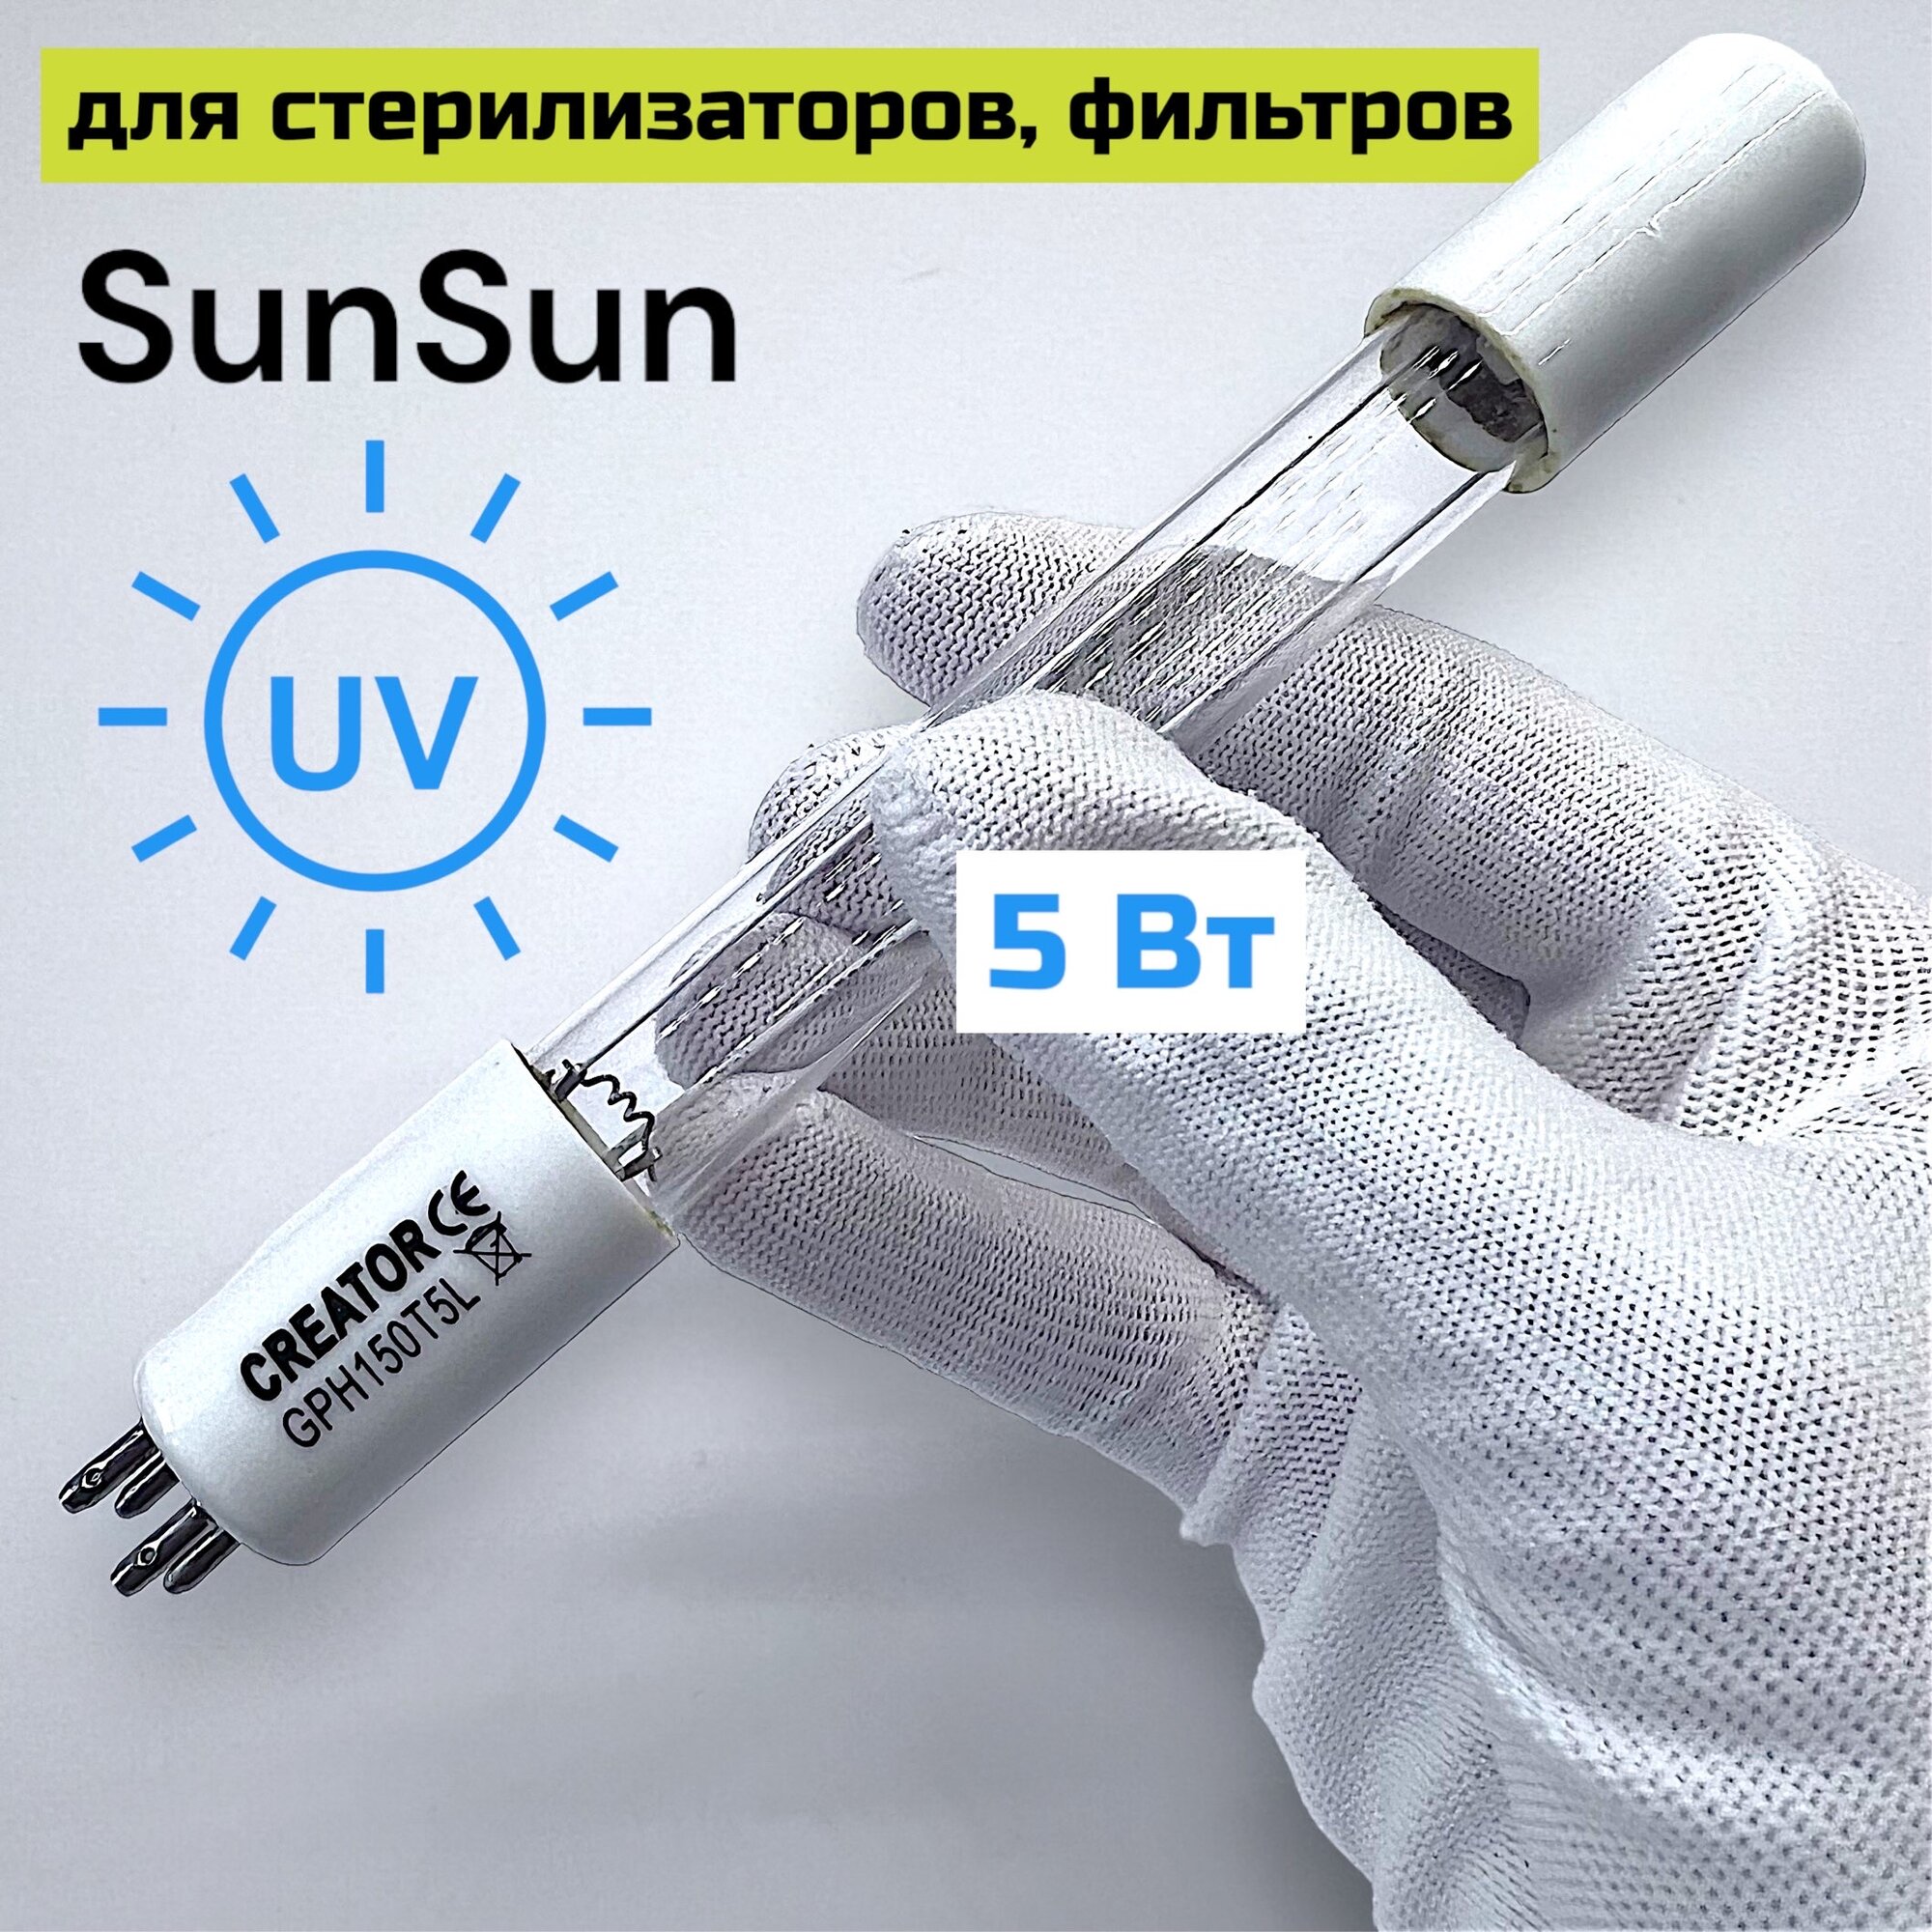 УФ лампа Creator 5w, GPH150 Т5L для стерилизатора, фильтра SunSun